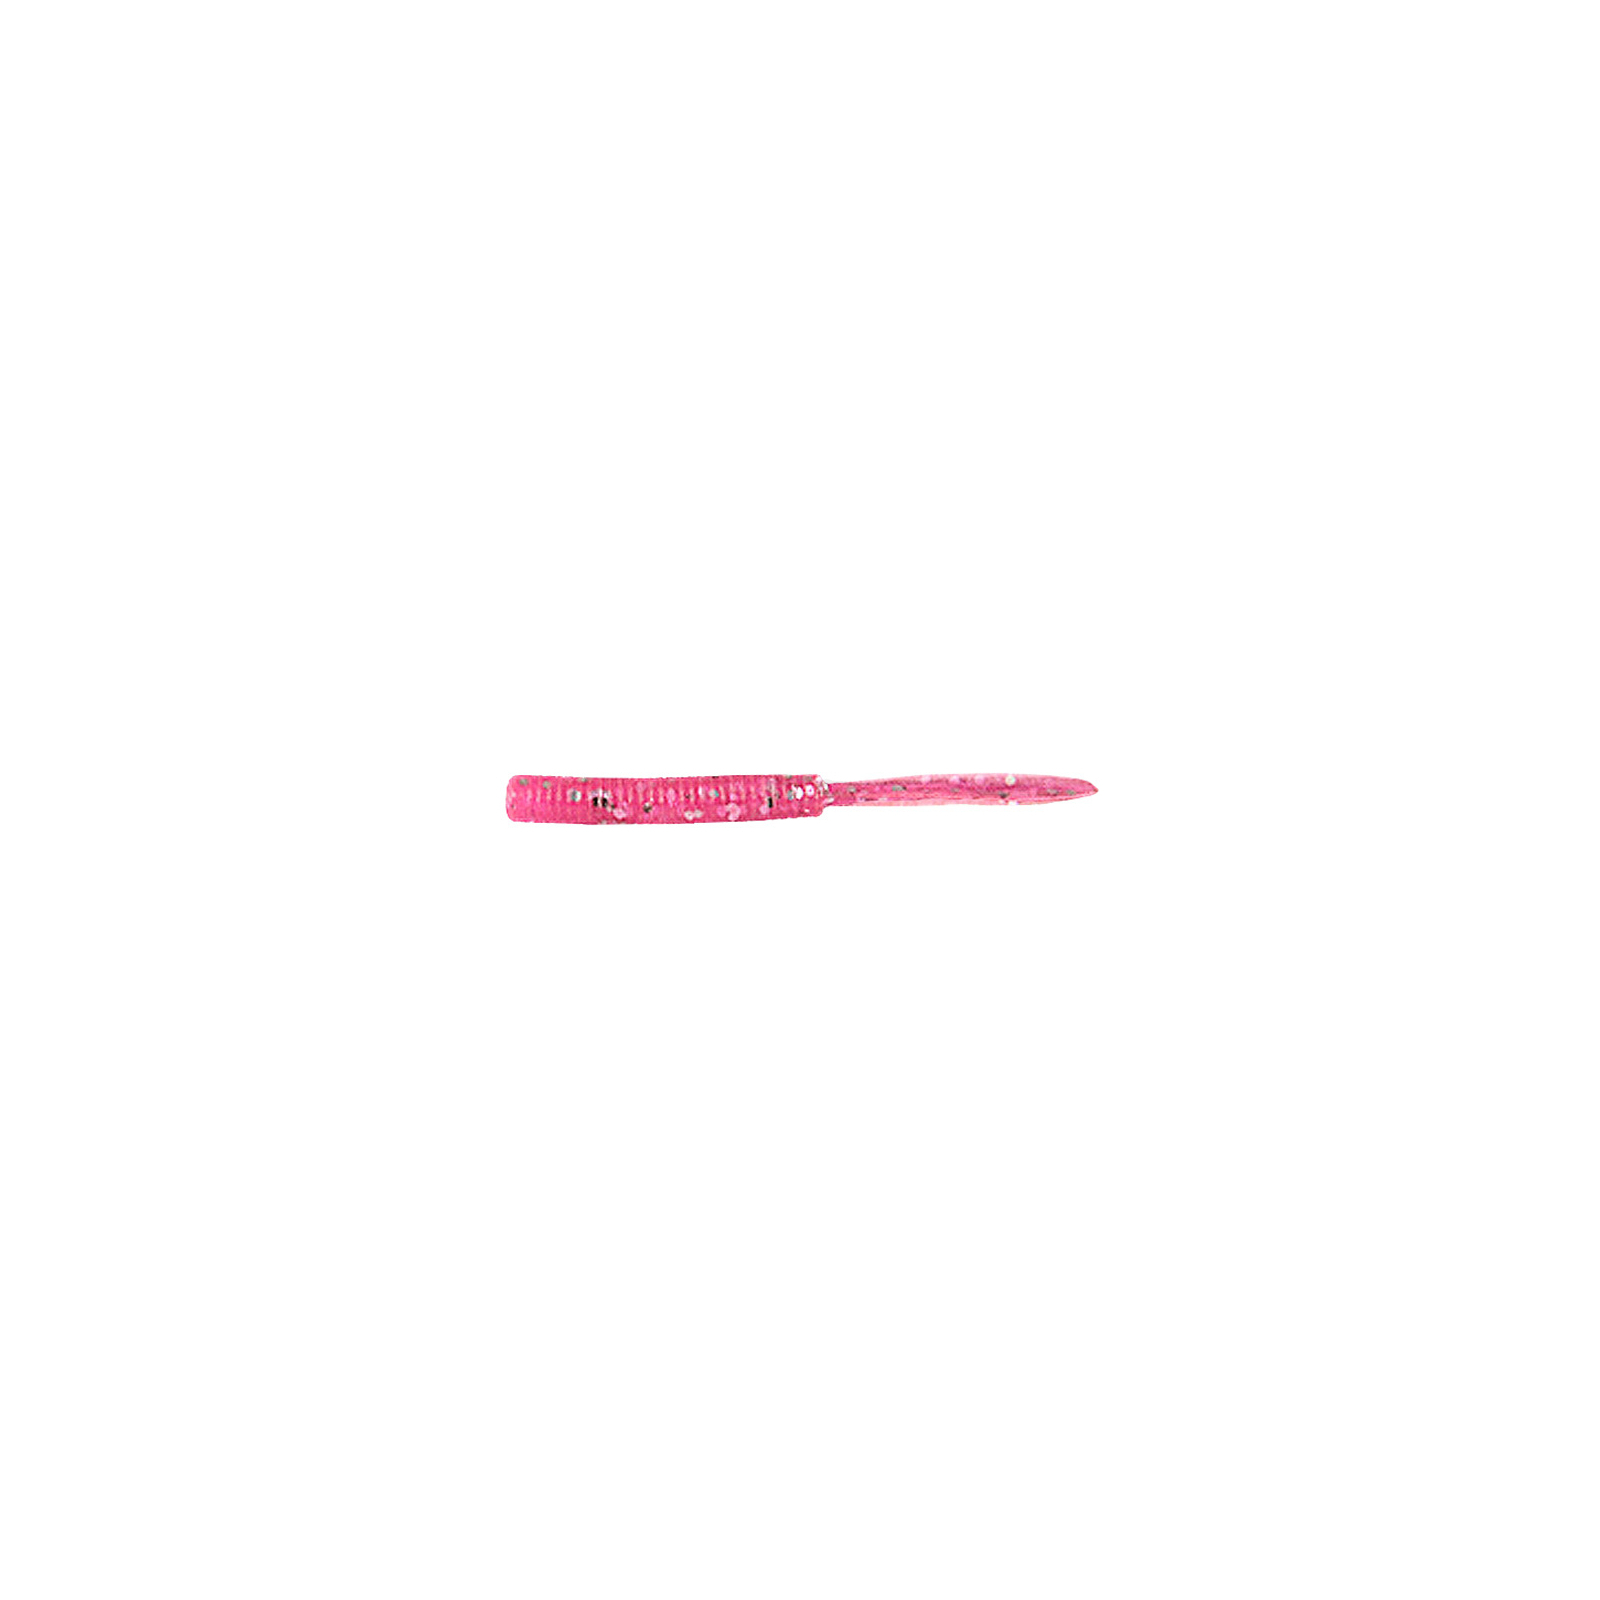 Силикон рыболовный Jackall Peke Peke 2" SQ Glow Pink Silver Flake 10 шт (1699.16.00)